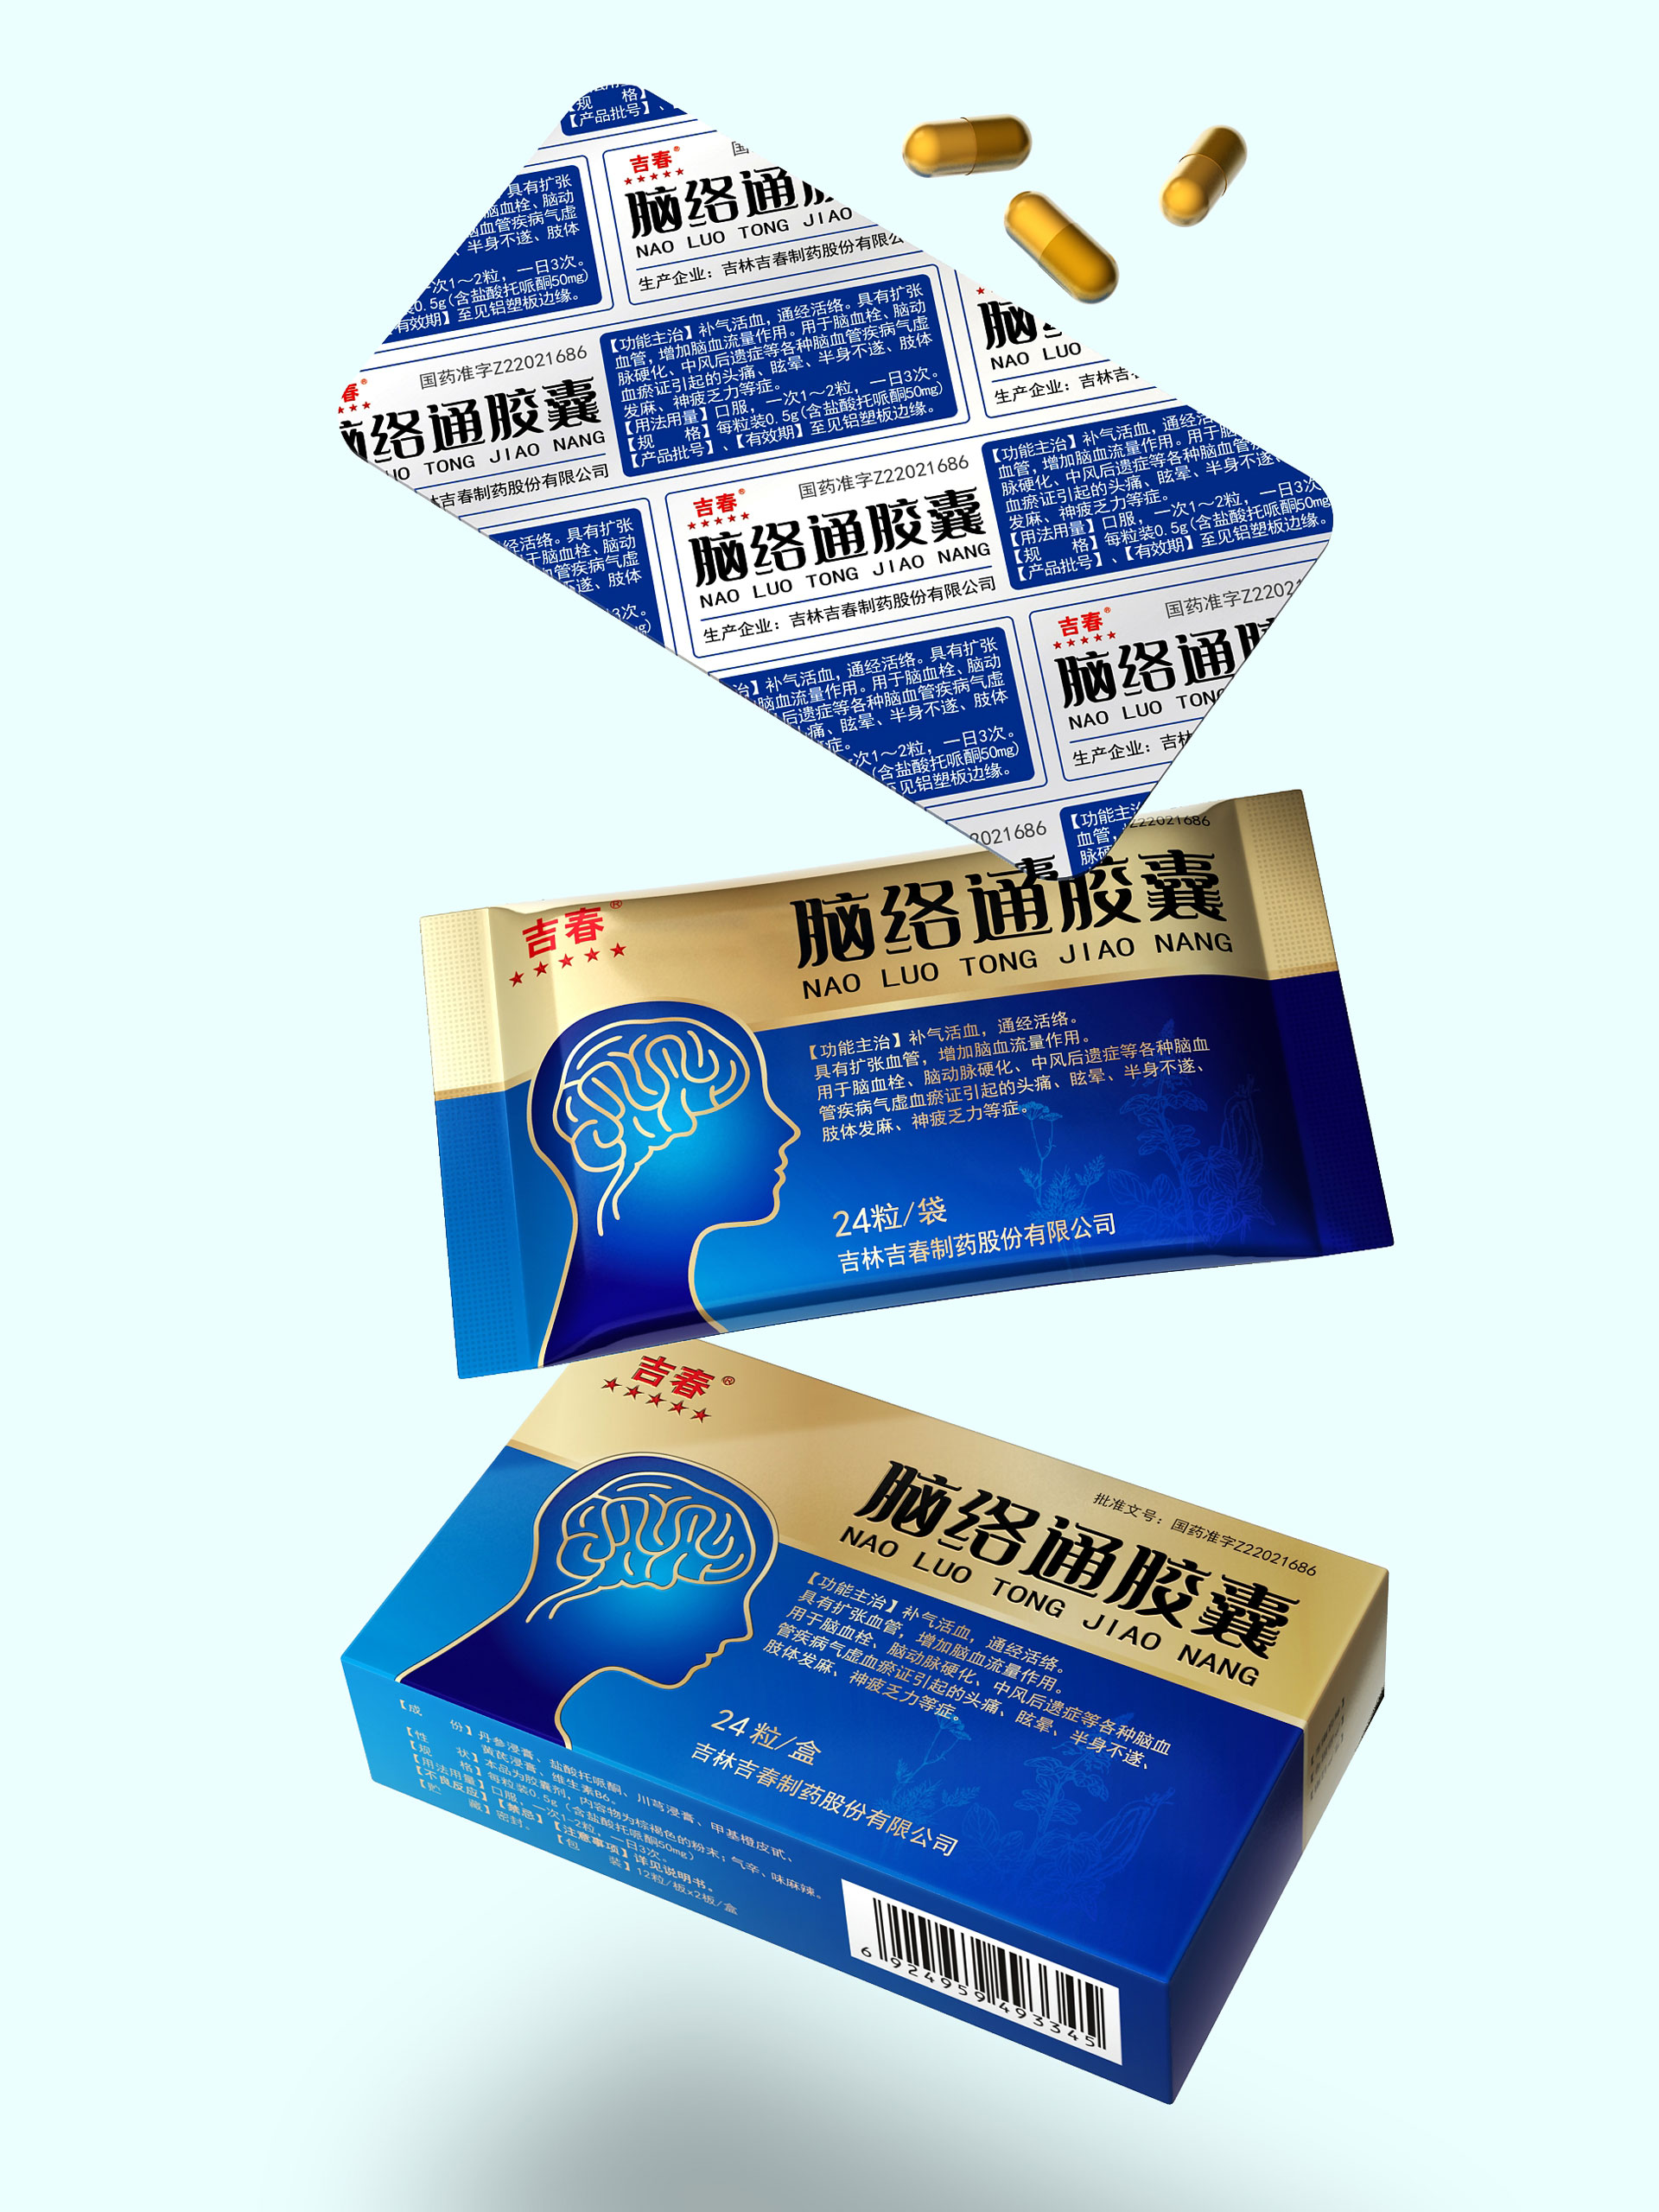 优一牌紫苏油软胶囊-辅助降血脂 单瓶装_上海天龙生物科技有限公司-药源网